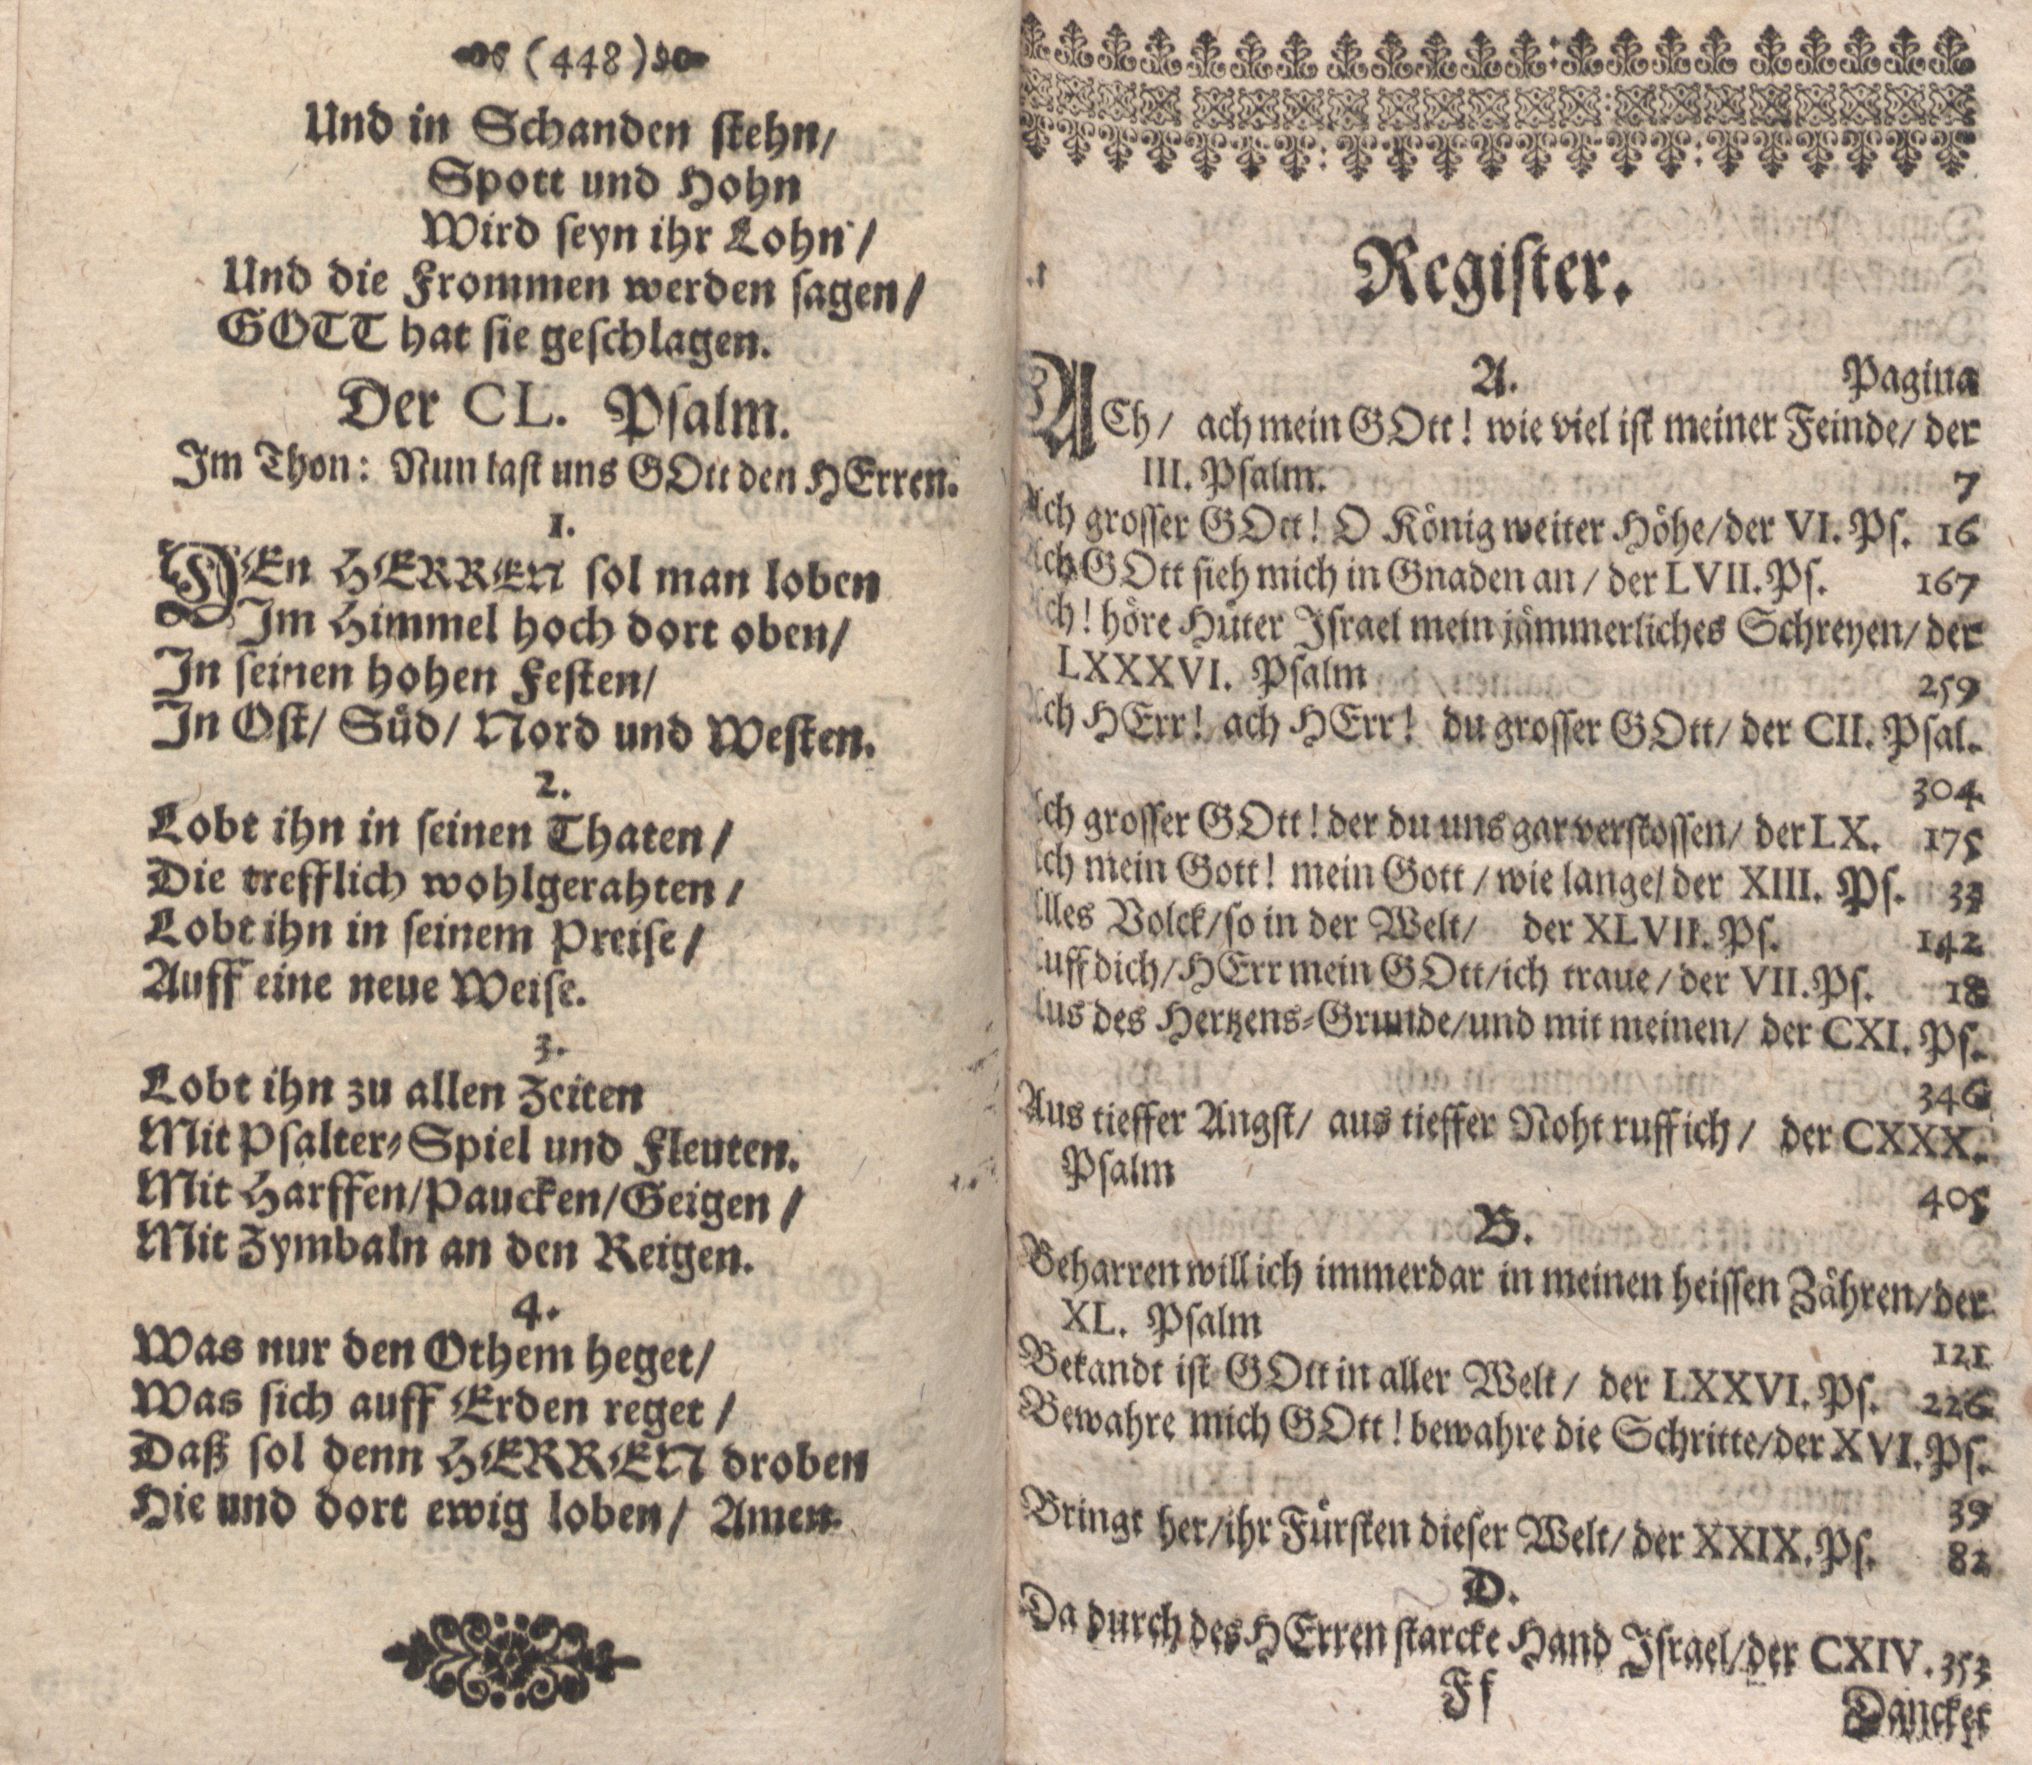 Der Verfolgete, Errettete und Lobsingende David (1686) | 225. (448) Основной текст, Указатель